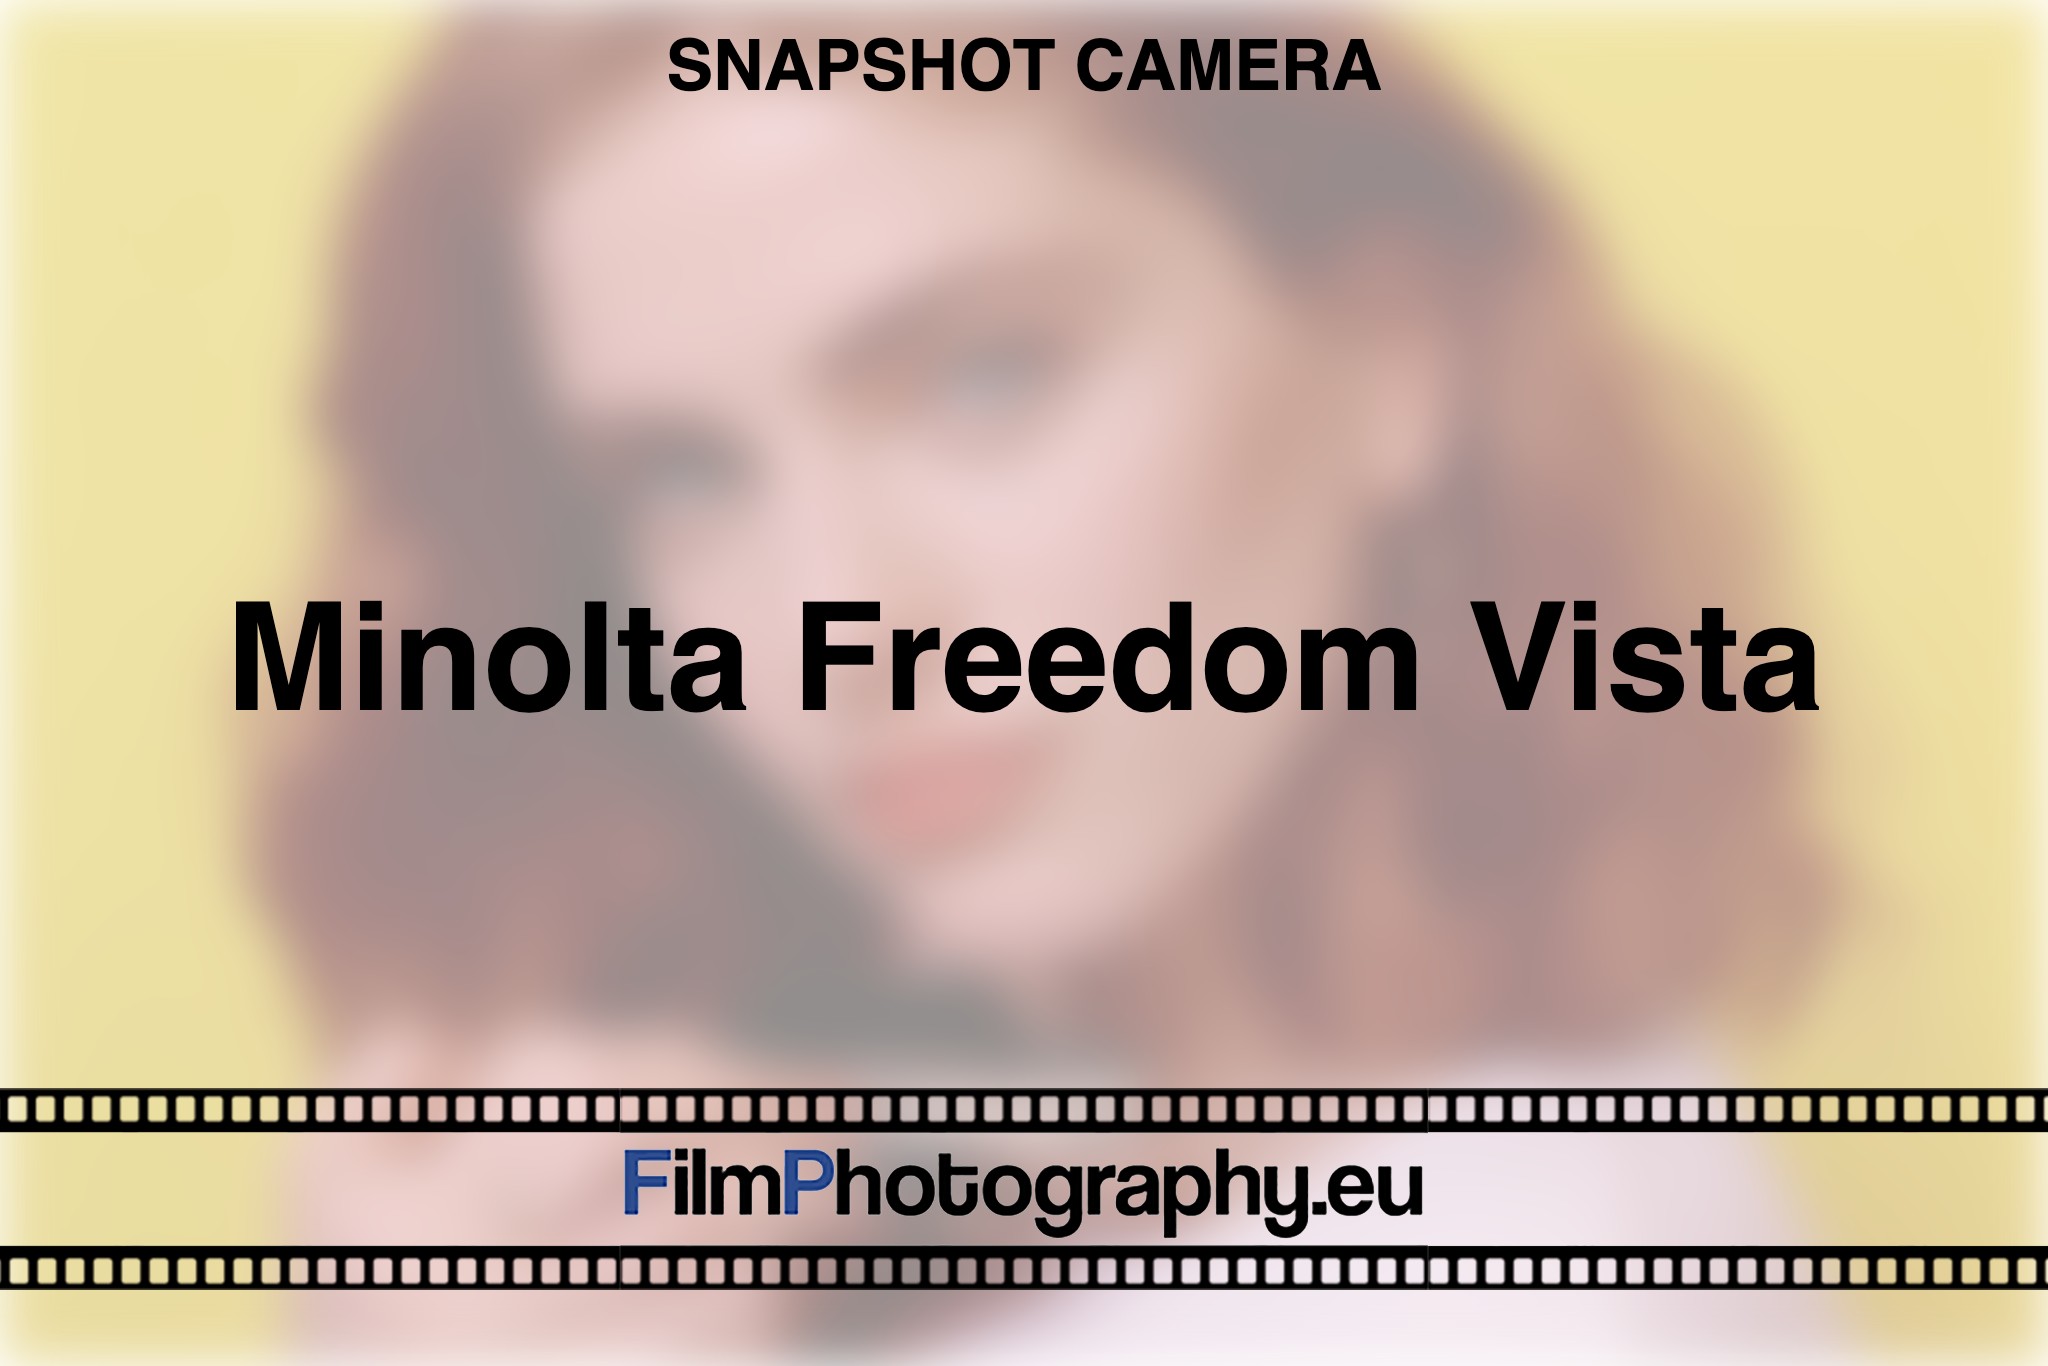 minolta-freedom-vista-snapshot-camera-bnv